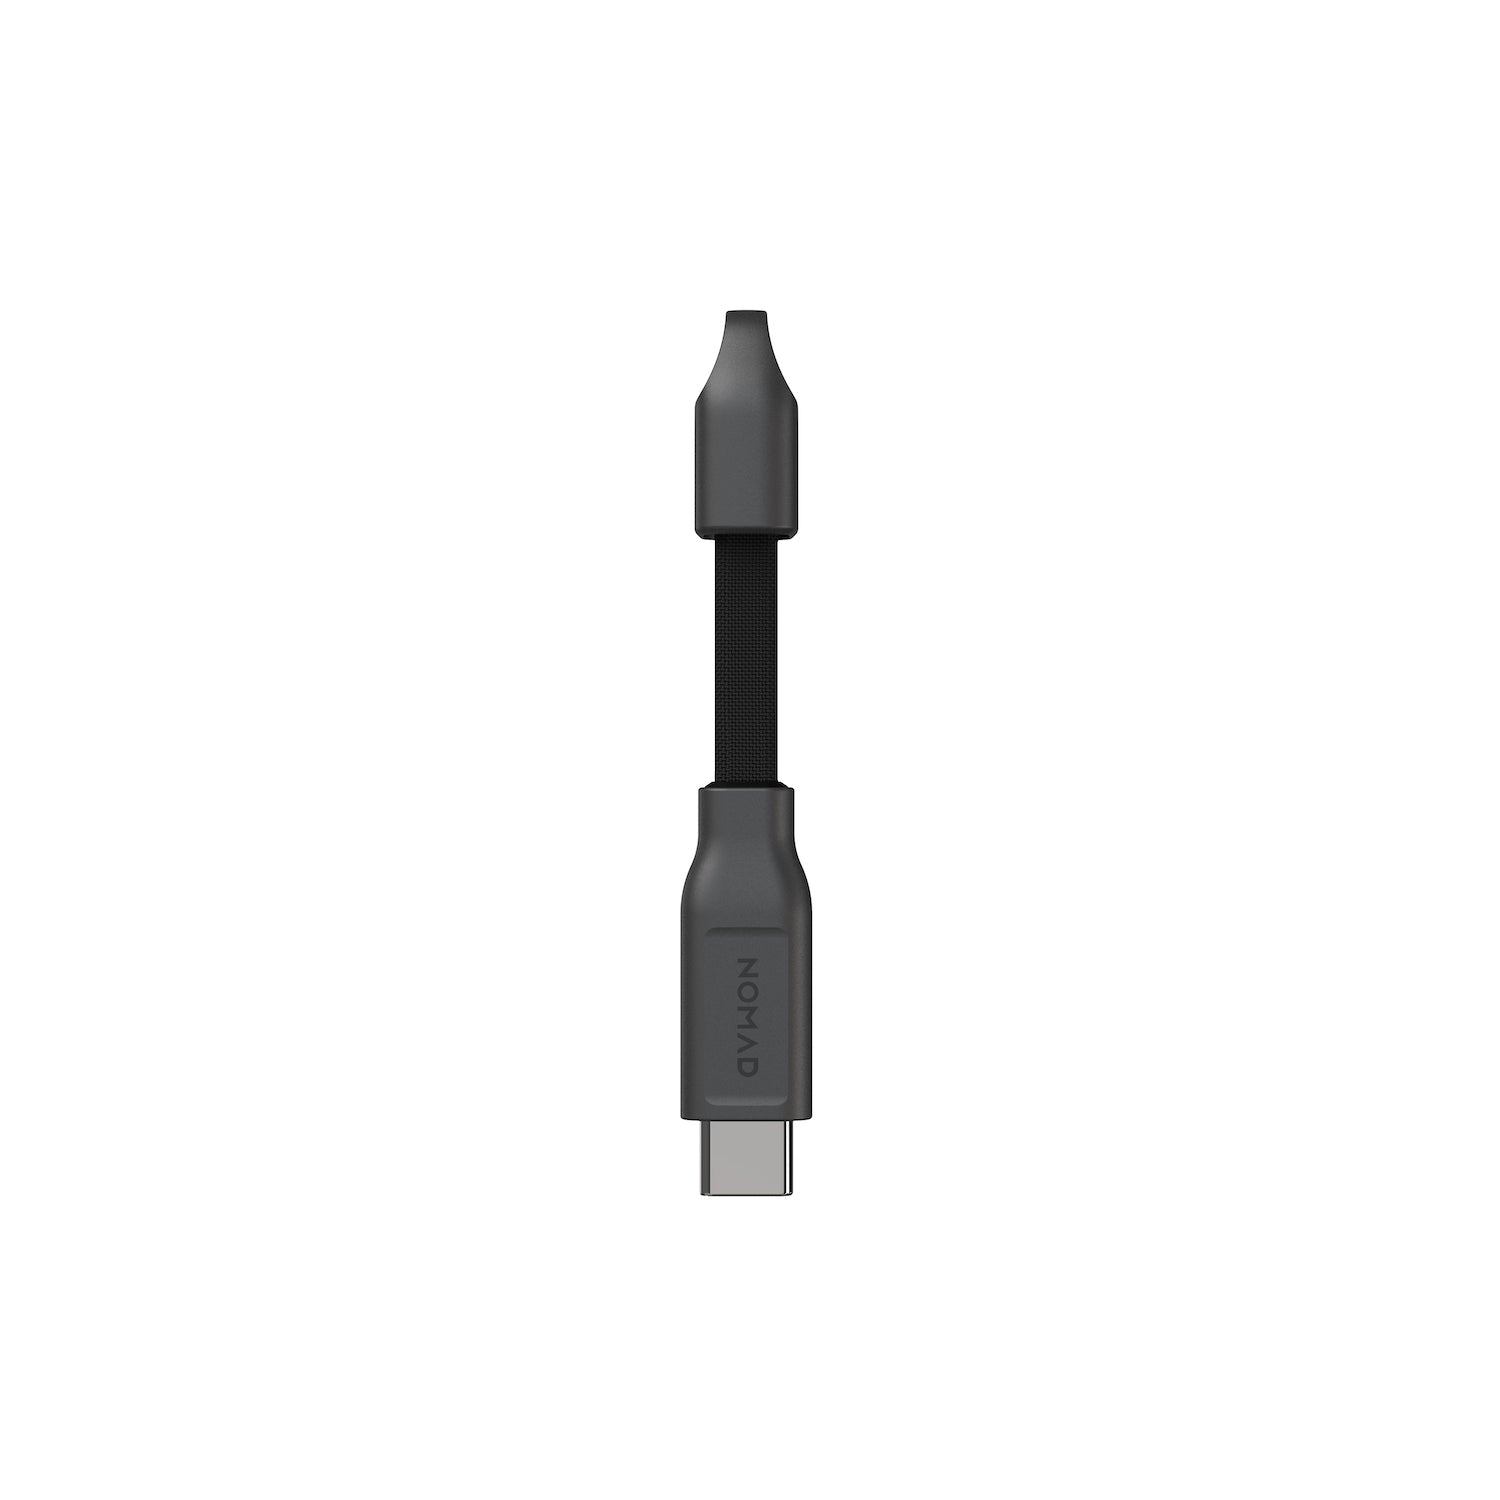 ChargeKey - USB-C to USB-C